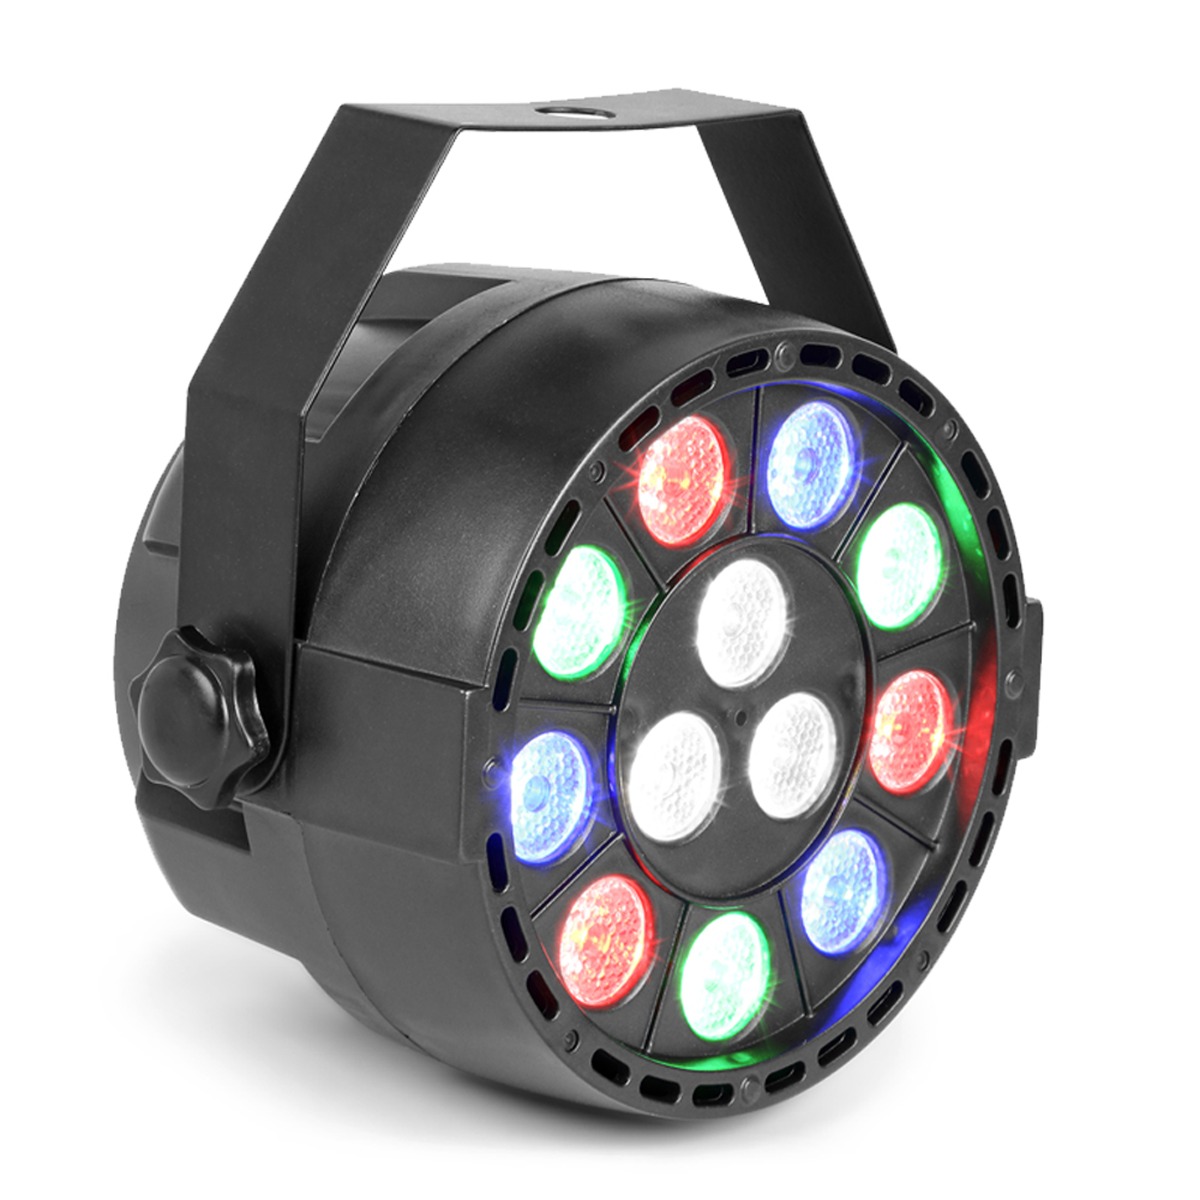 5 Best Budget LED Par Can Lights 